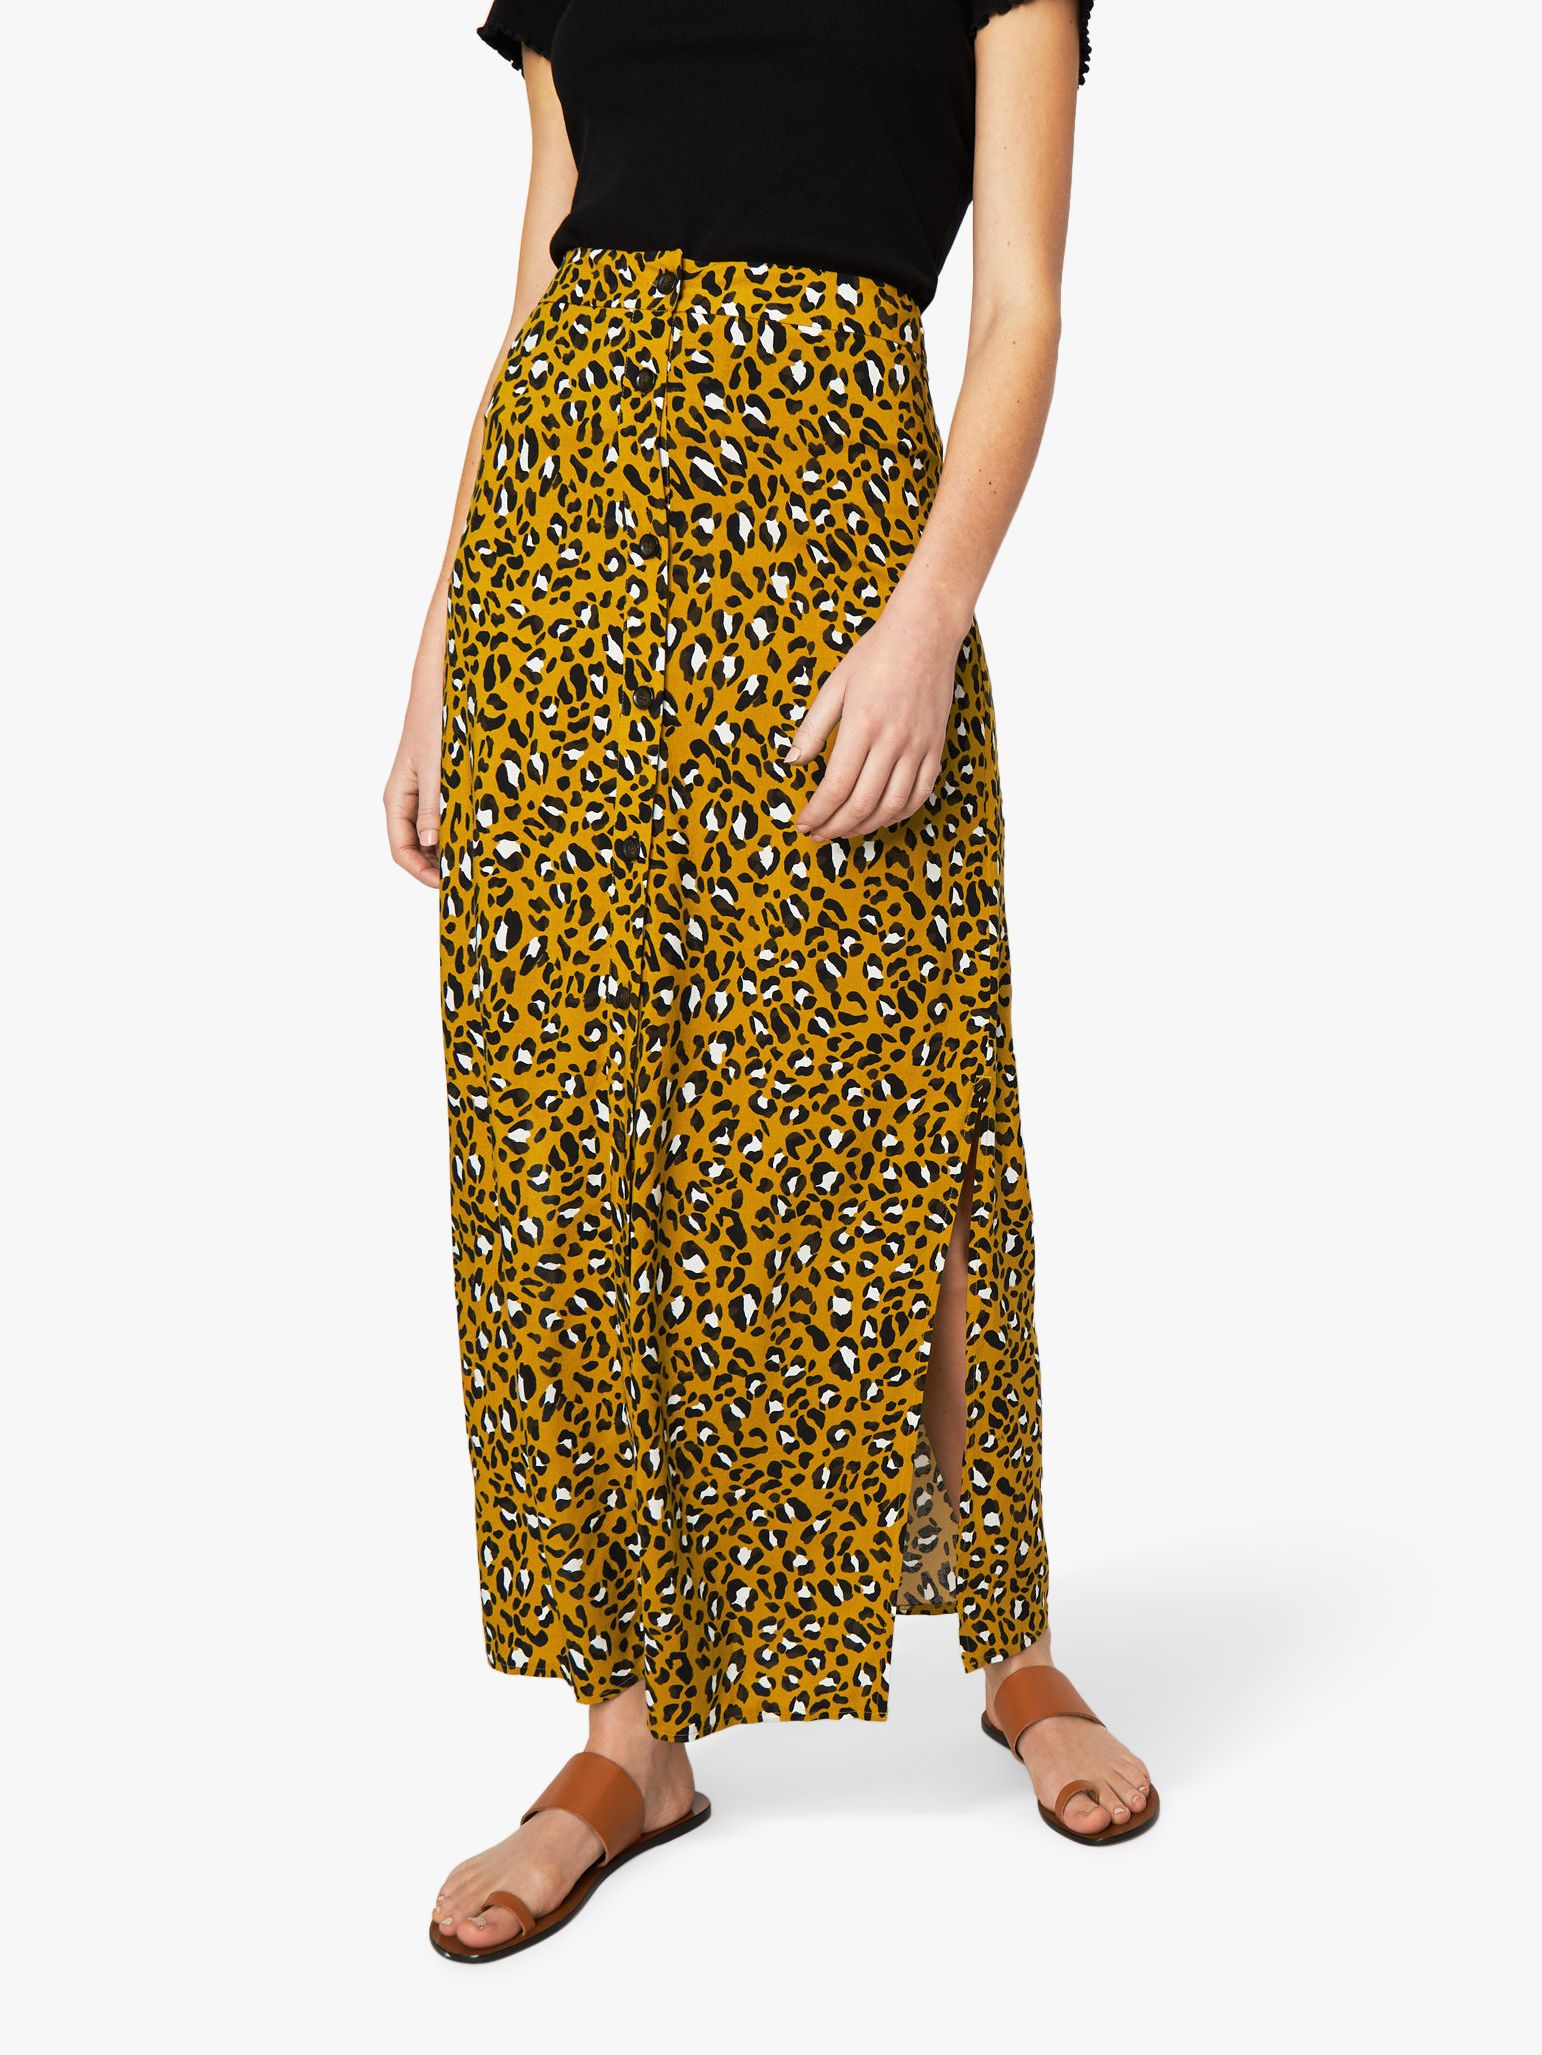 leopard print skirt maxi